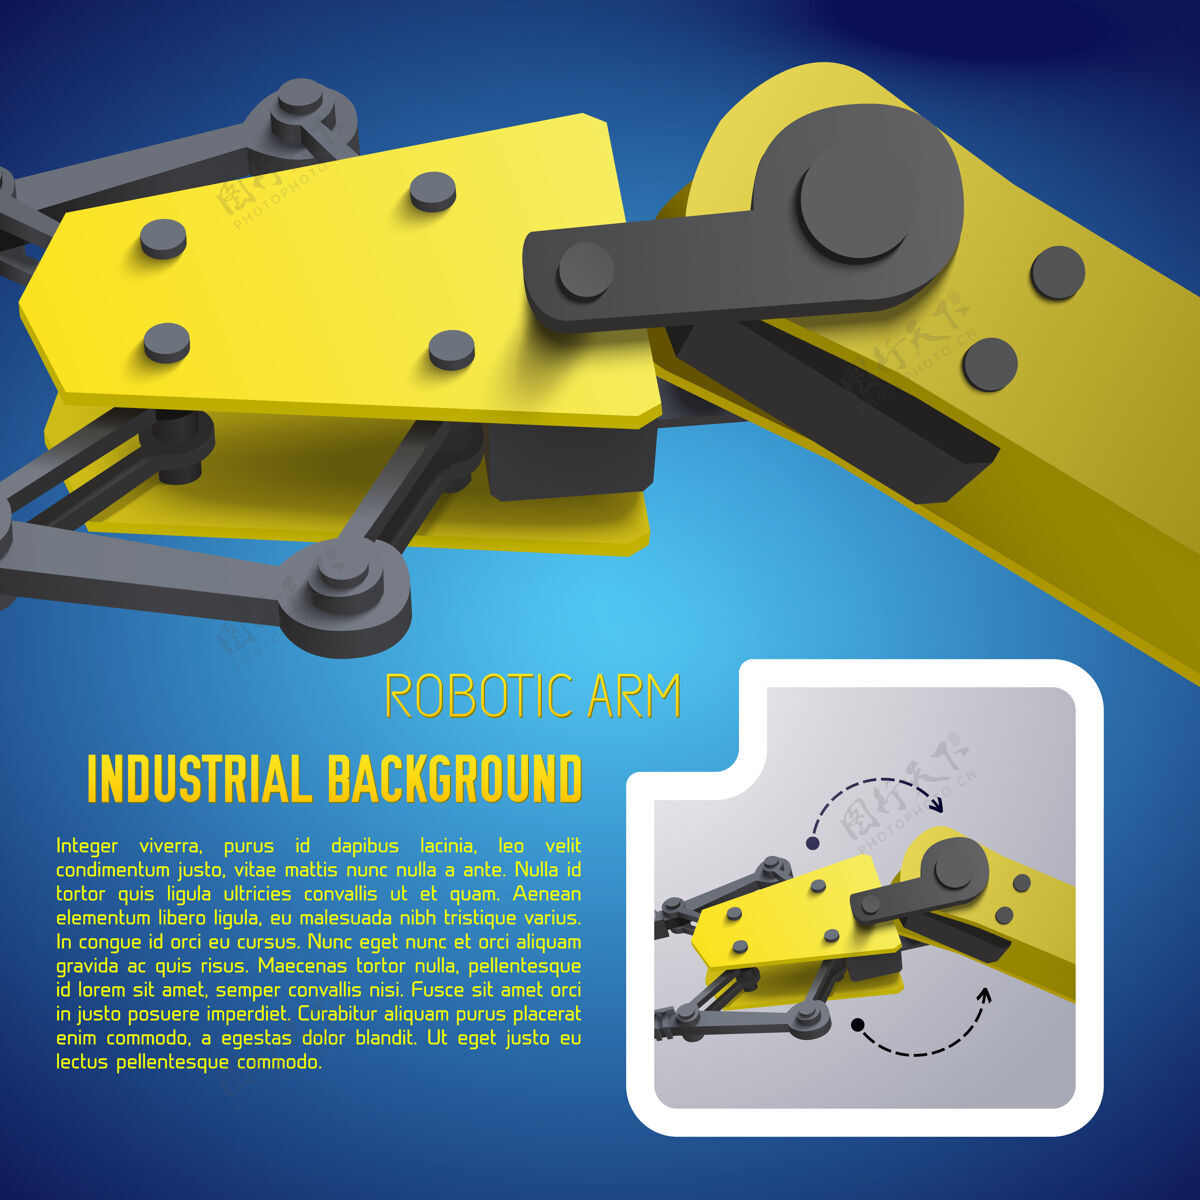 制造三维现实黄色机器人手臂与工业背景描述和机器人手臂的细节生产机器人工具